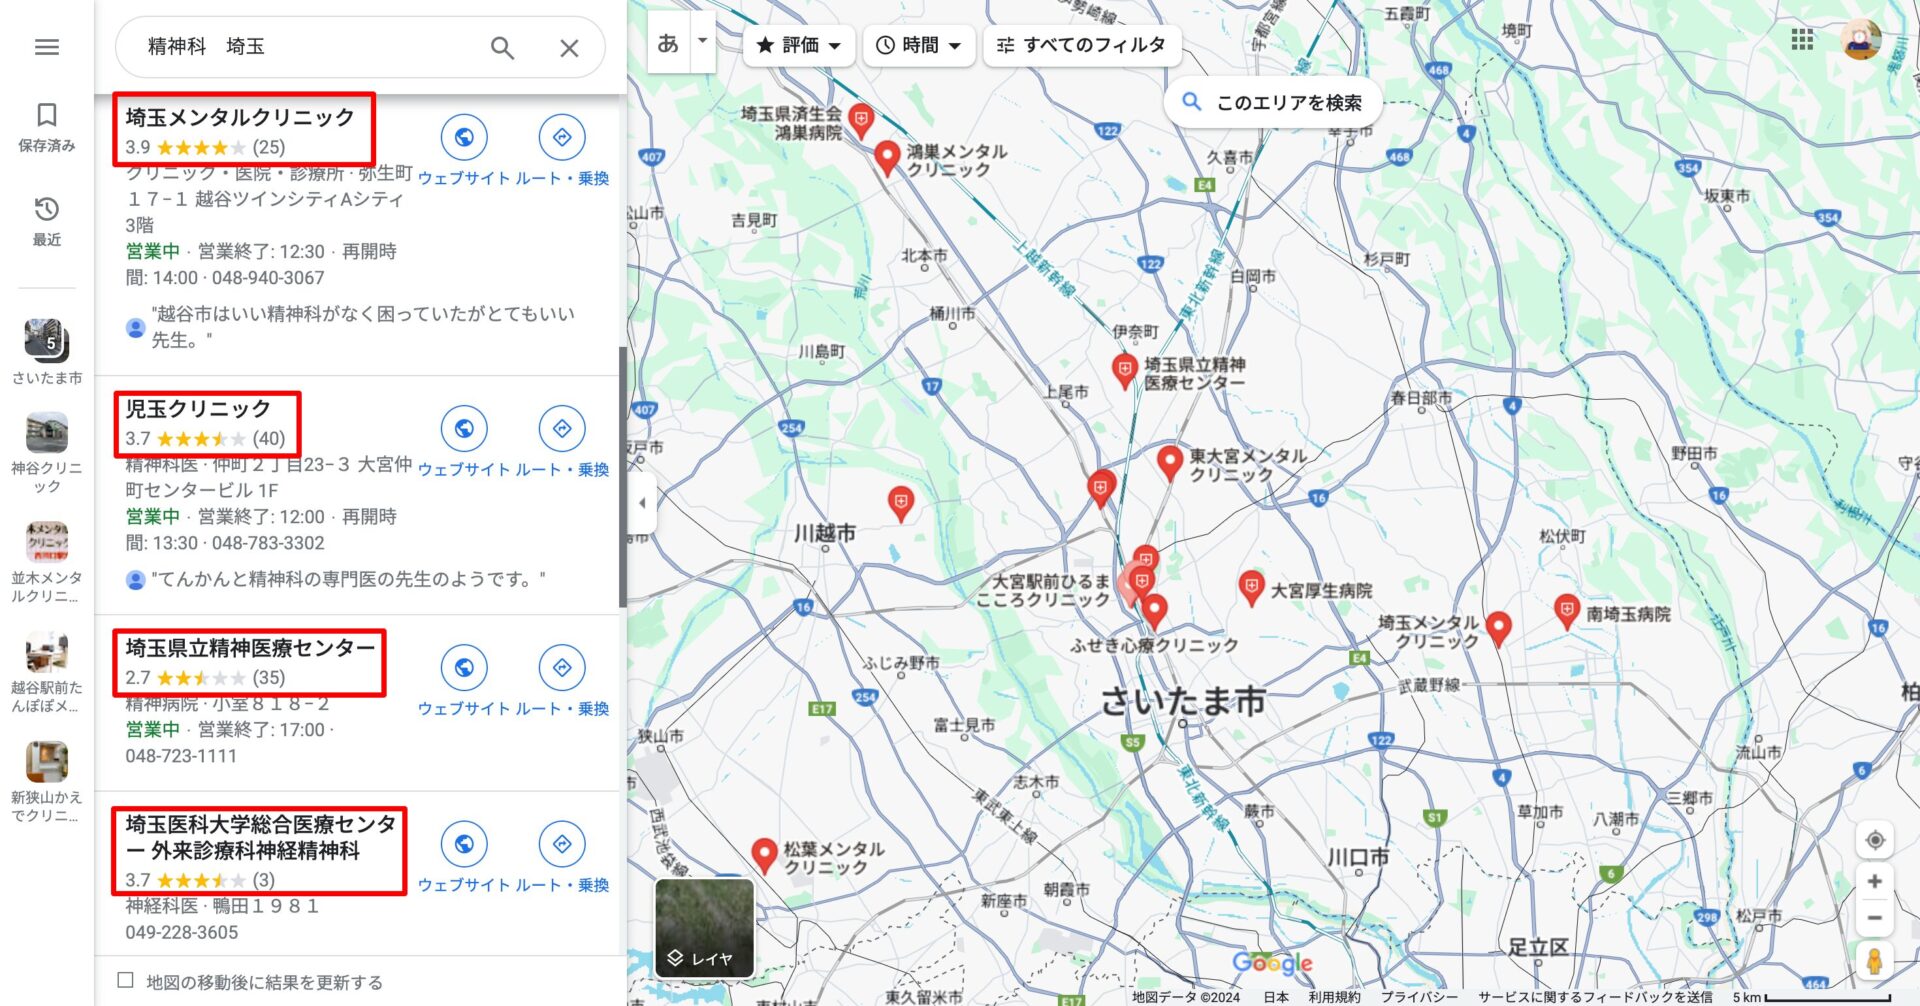 精神科埼玉のGoogleマップ